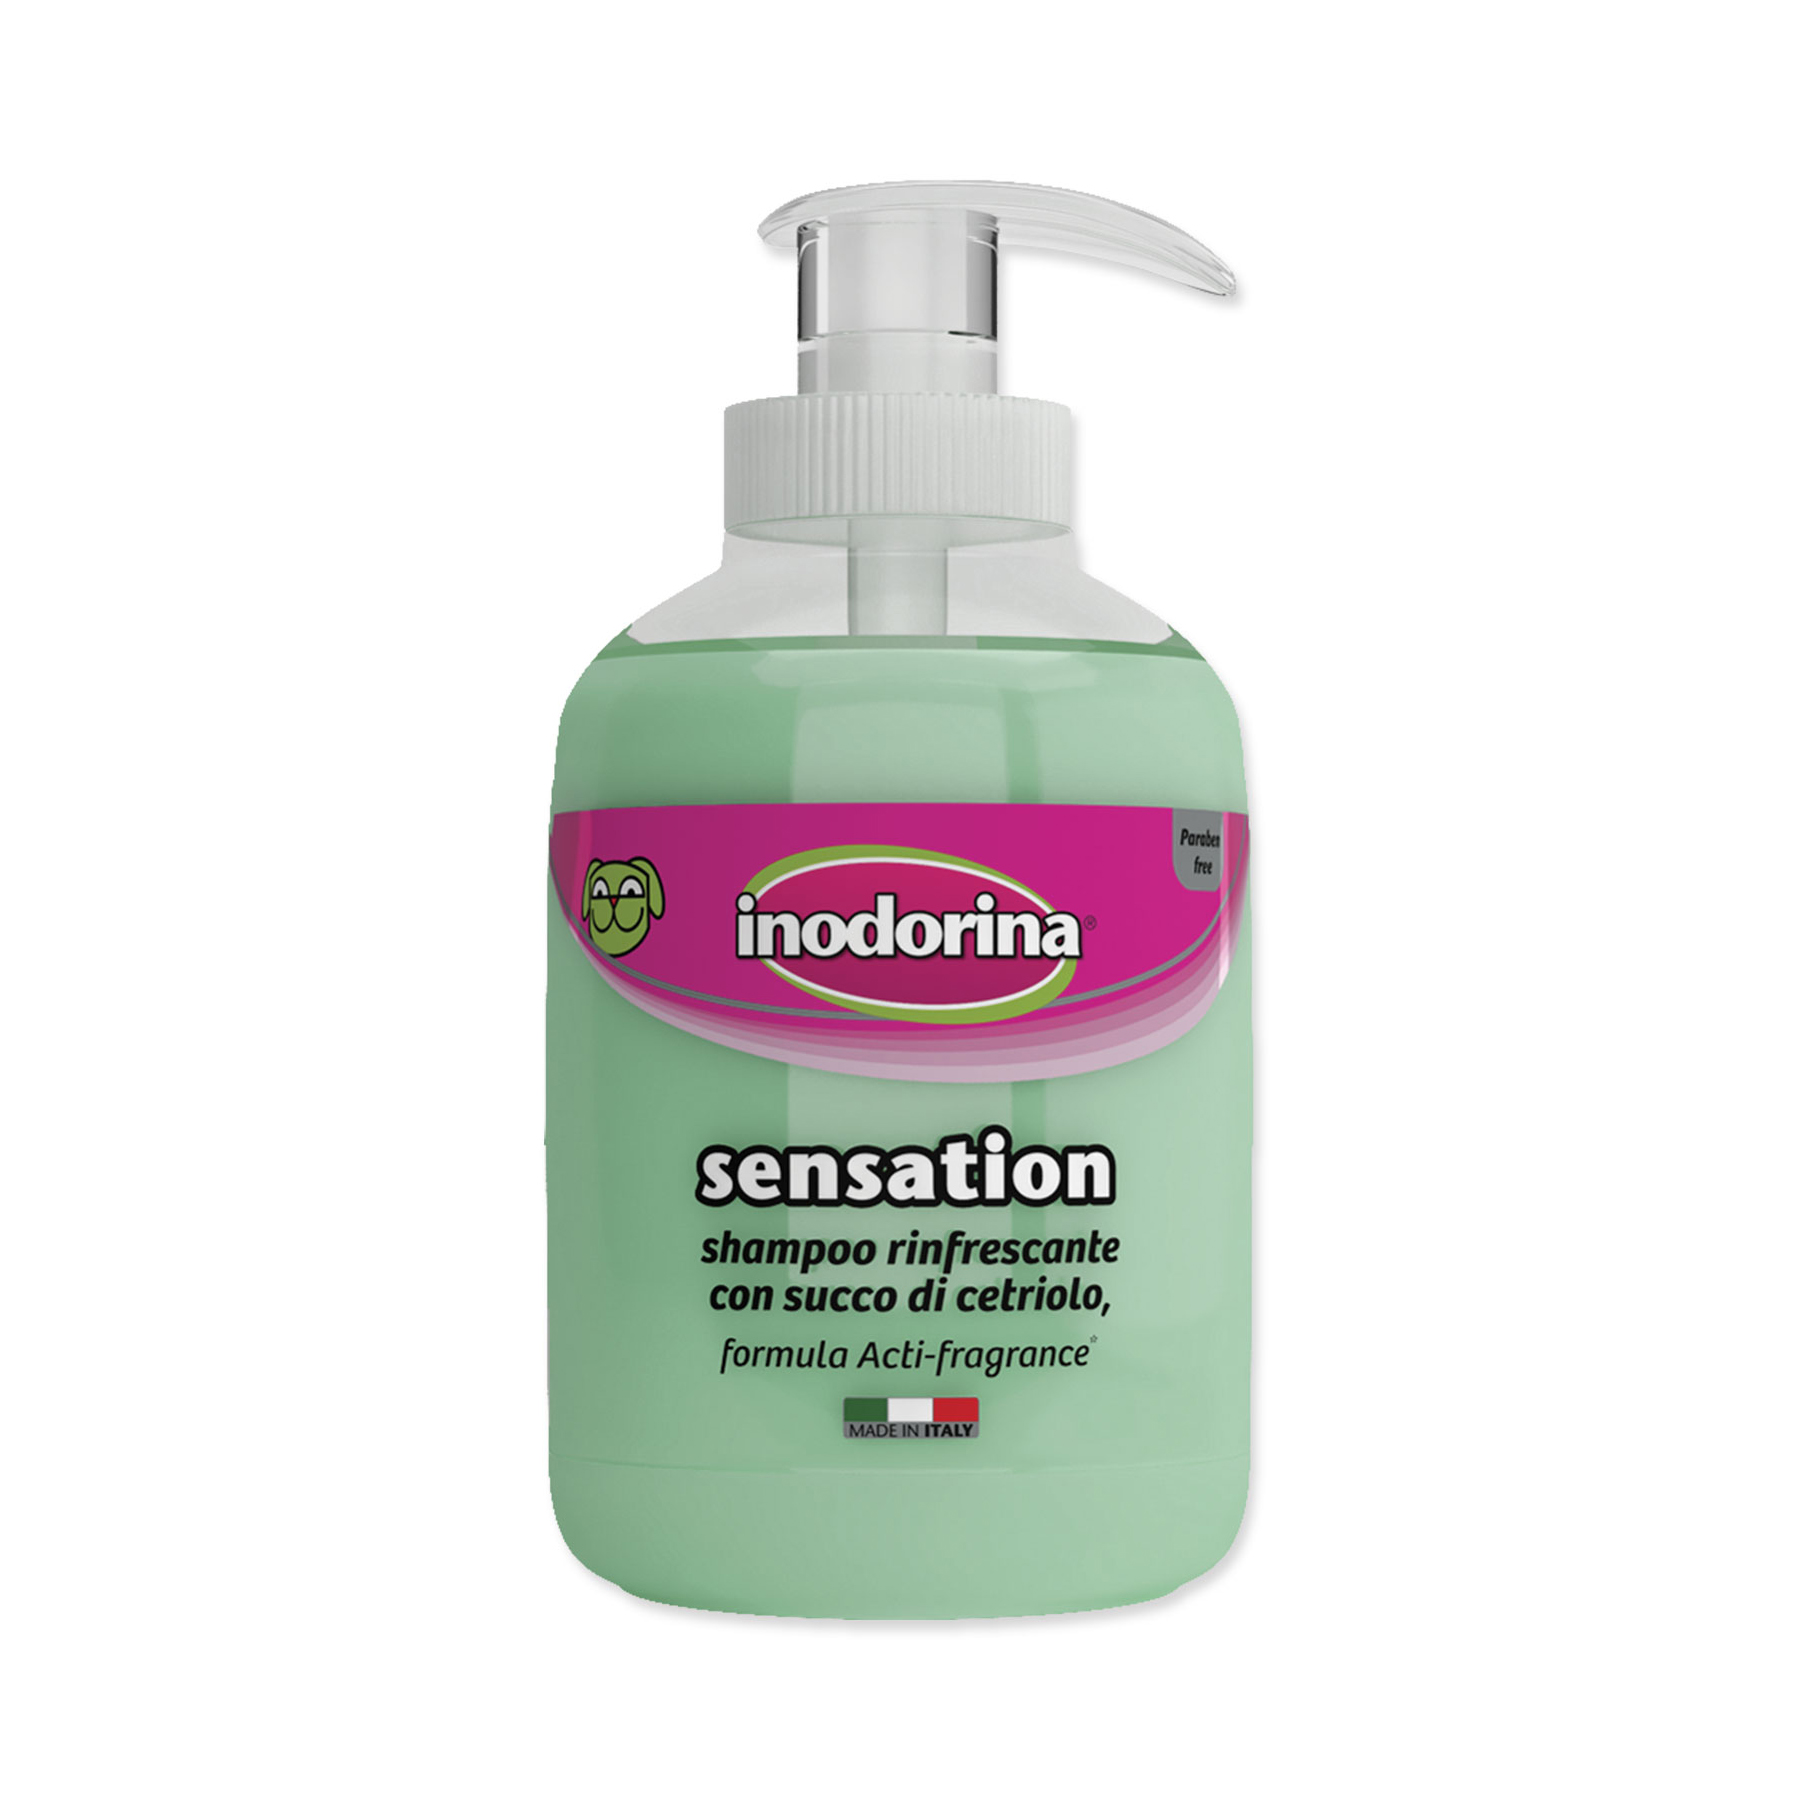 Inodorina Sensation osvěžující šampon 300 ml Inodorina